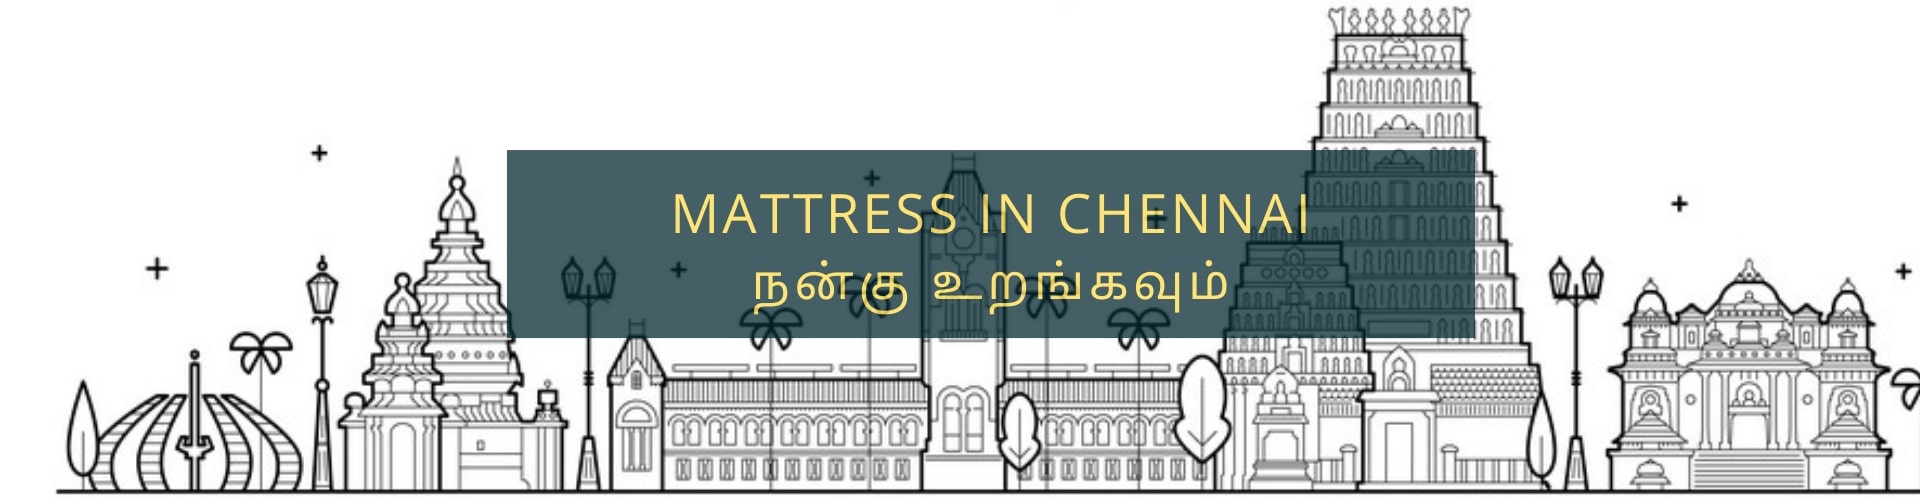 Buy mattresses online in chennai